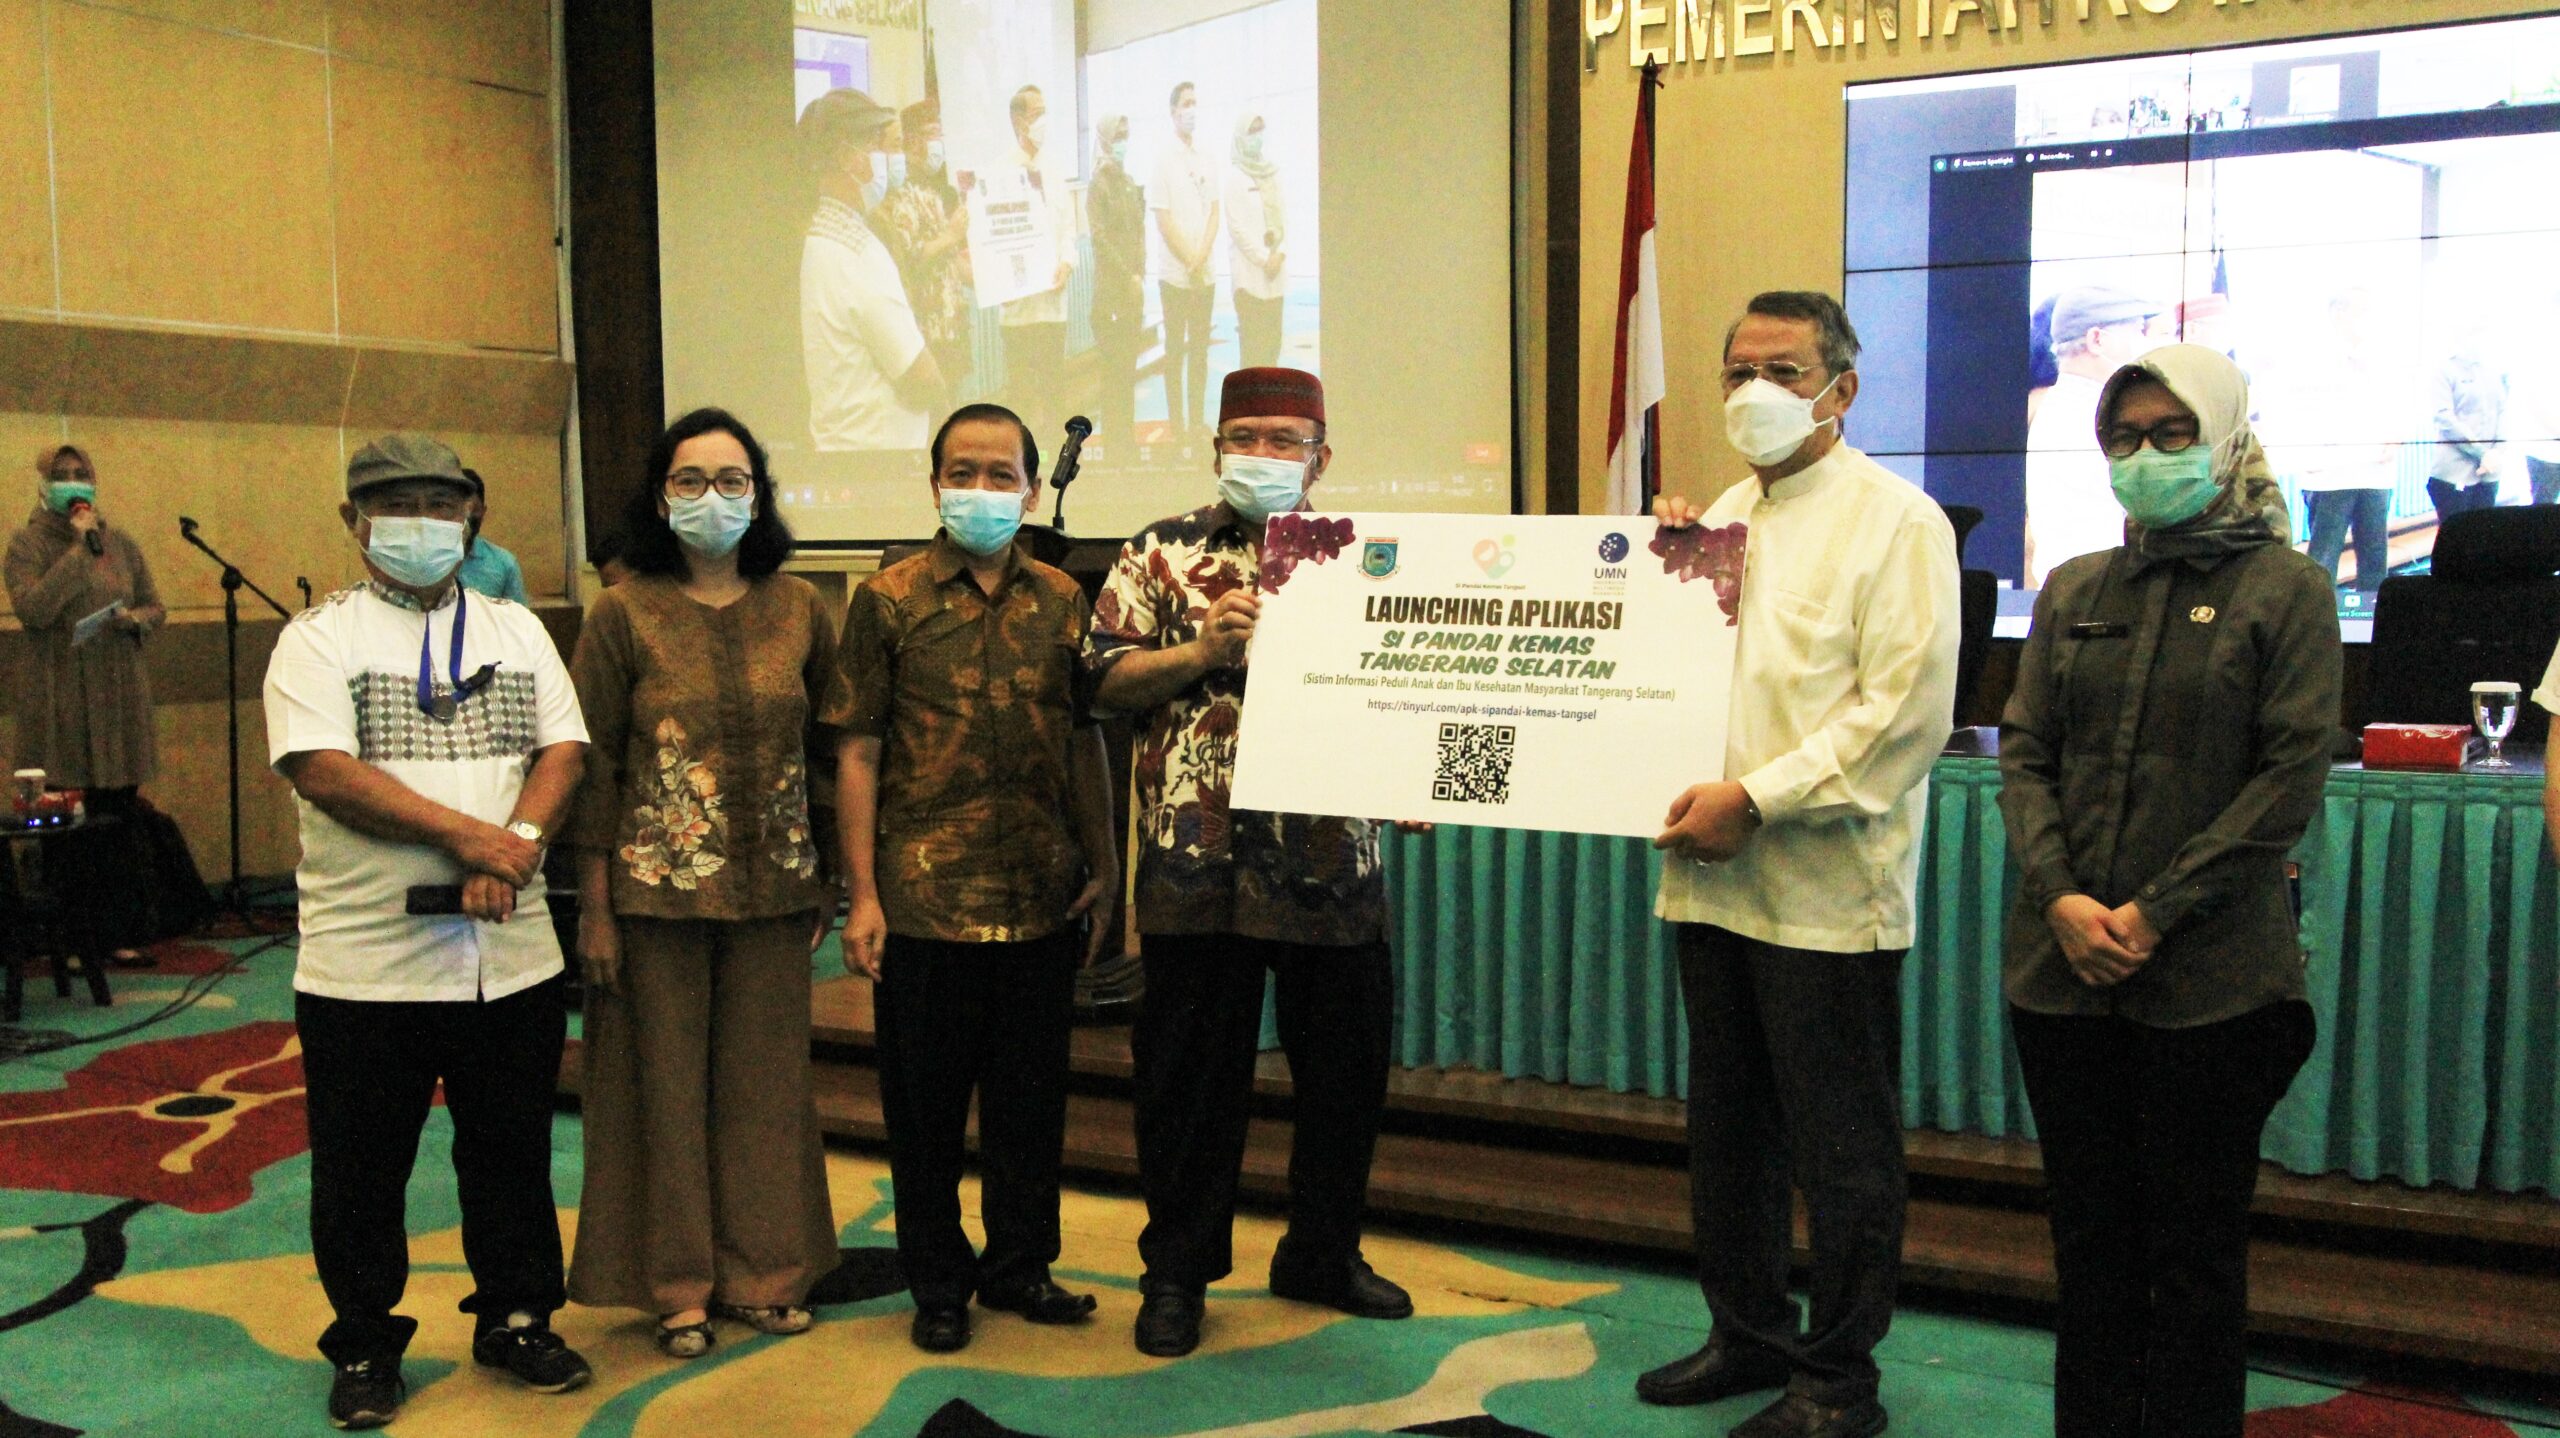 Dinas Kesehatan Kota Tangerang Selatan bersama Universitas Multimedia Nusantara Luncurkan Aplikasi Layanan Kesehatan Masyarakat “SI PANDAI KEMAS TANGSEL”